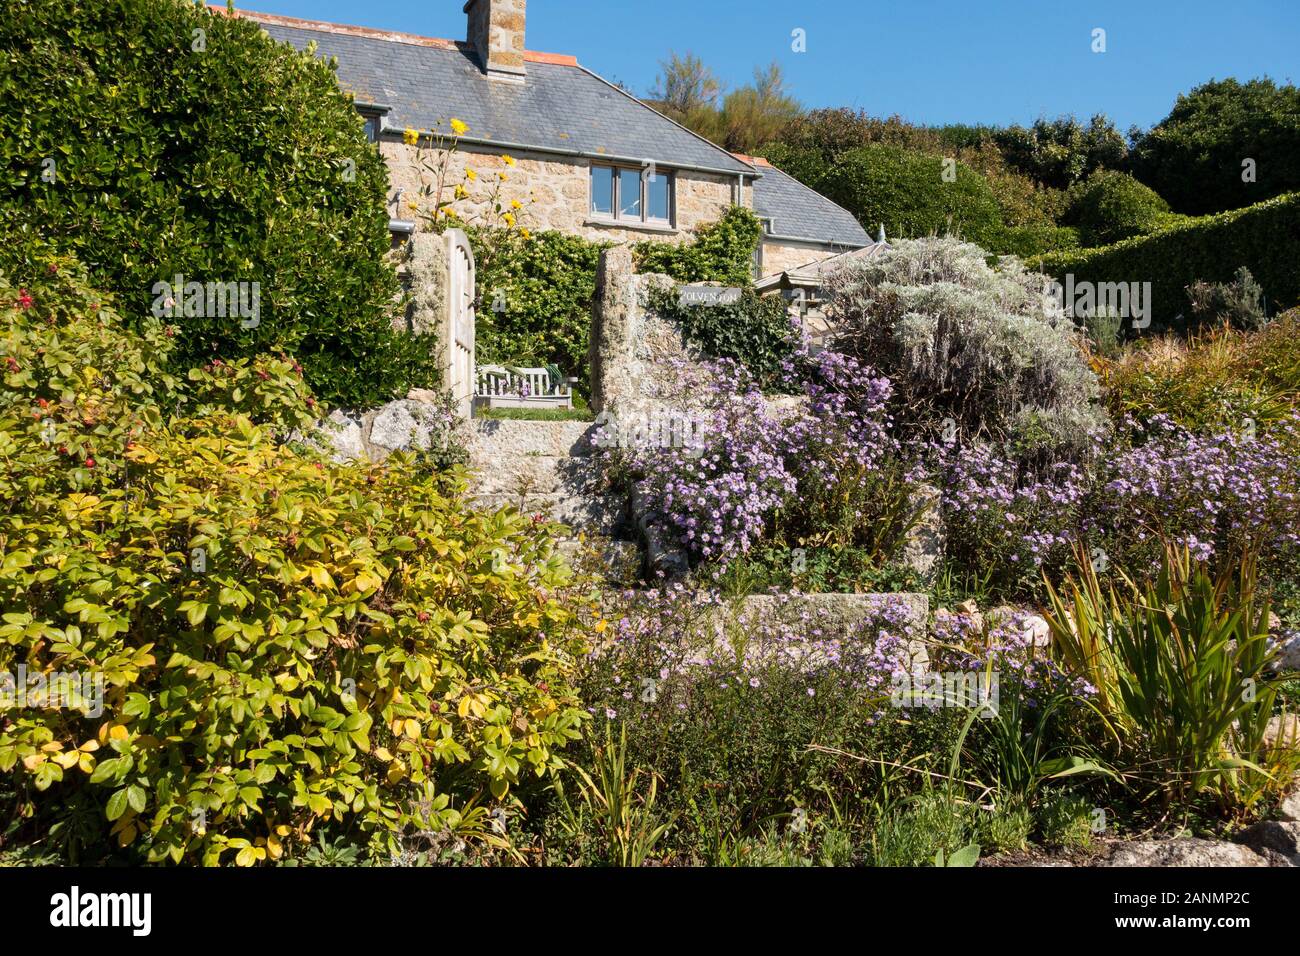 Ziemlich Cornish Cottage Garten an einem sonnigen Tag im September mit klaren blauen Himmel, Polventon, Porthgwarra, Cornwall, Großbritannien Stockfoto